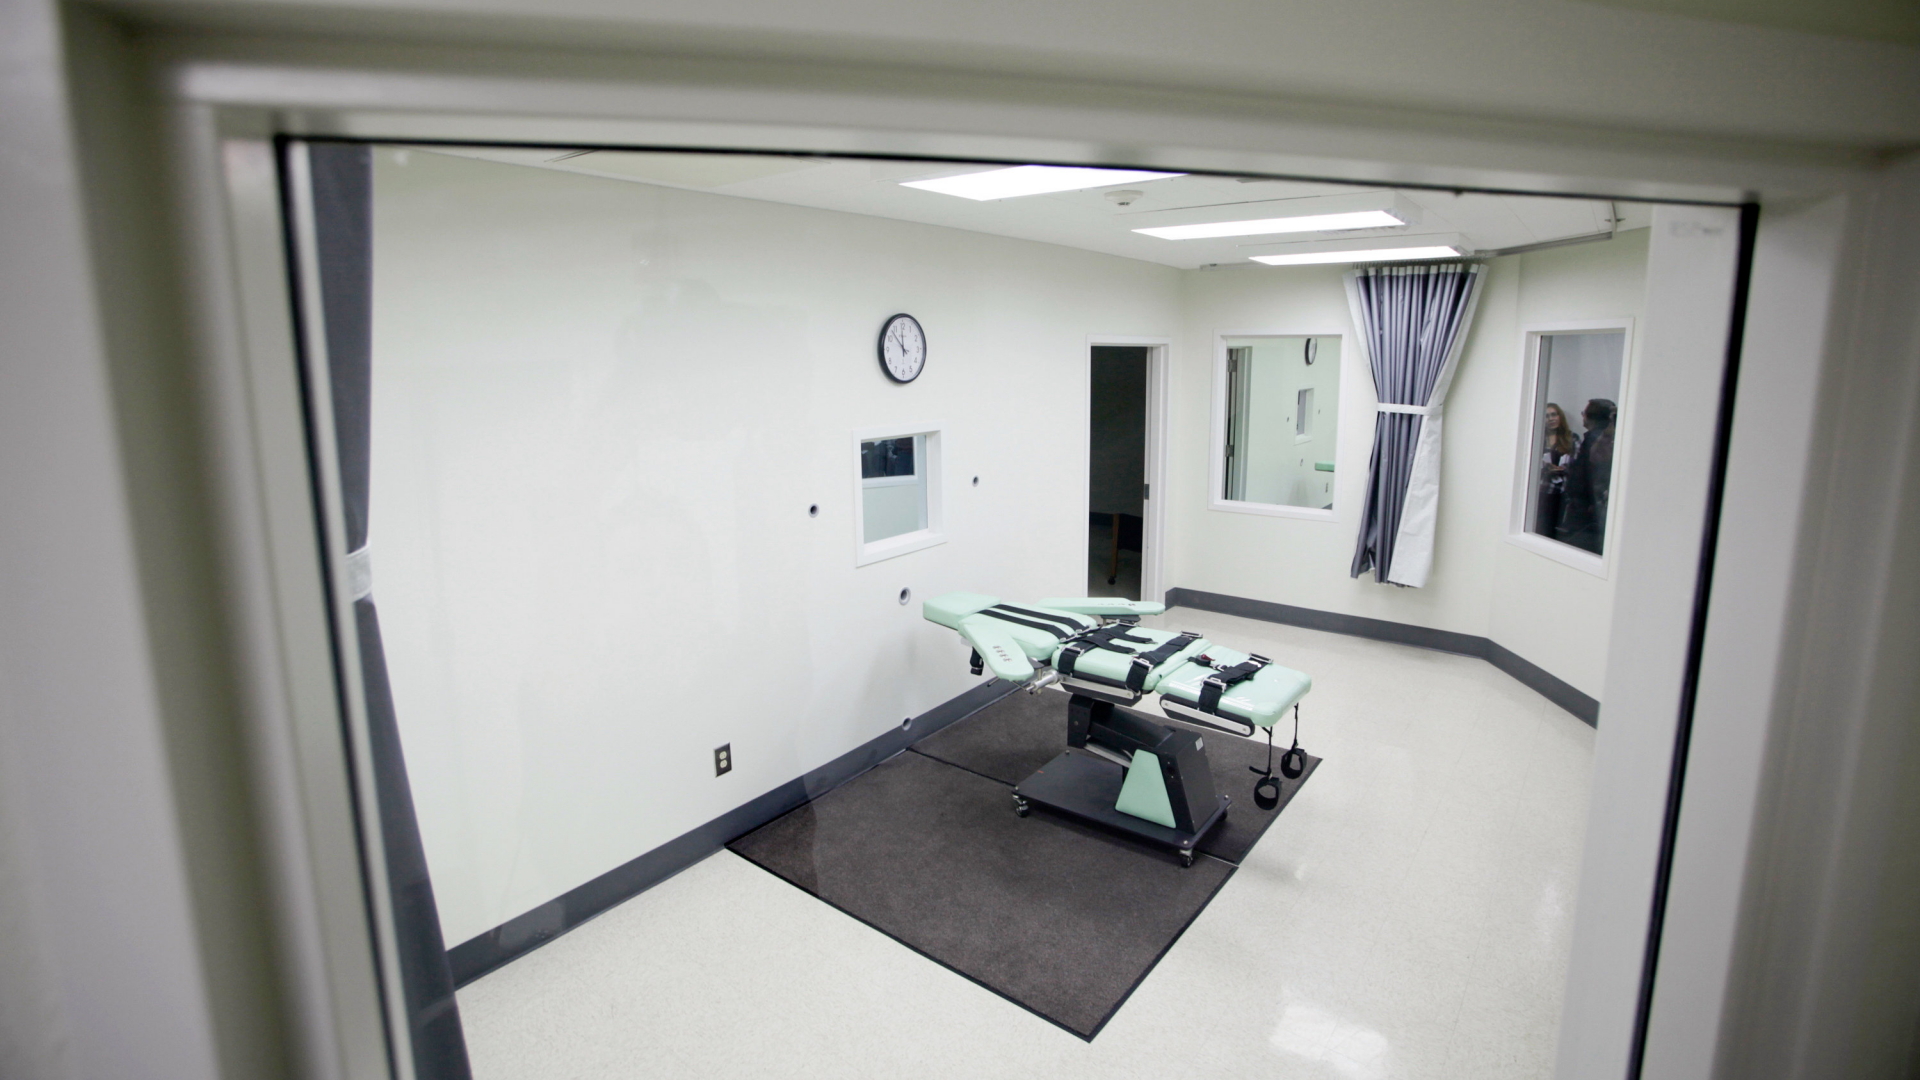 Blick in die Hinrichtungskammer des San Quentin Gefängnis im US-Bundesstaat Kalifornien, in der mit Injektion Urteile vollstreckt werden.  | dpa